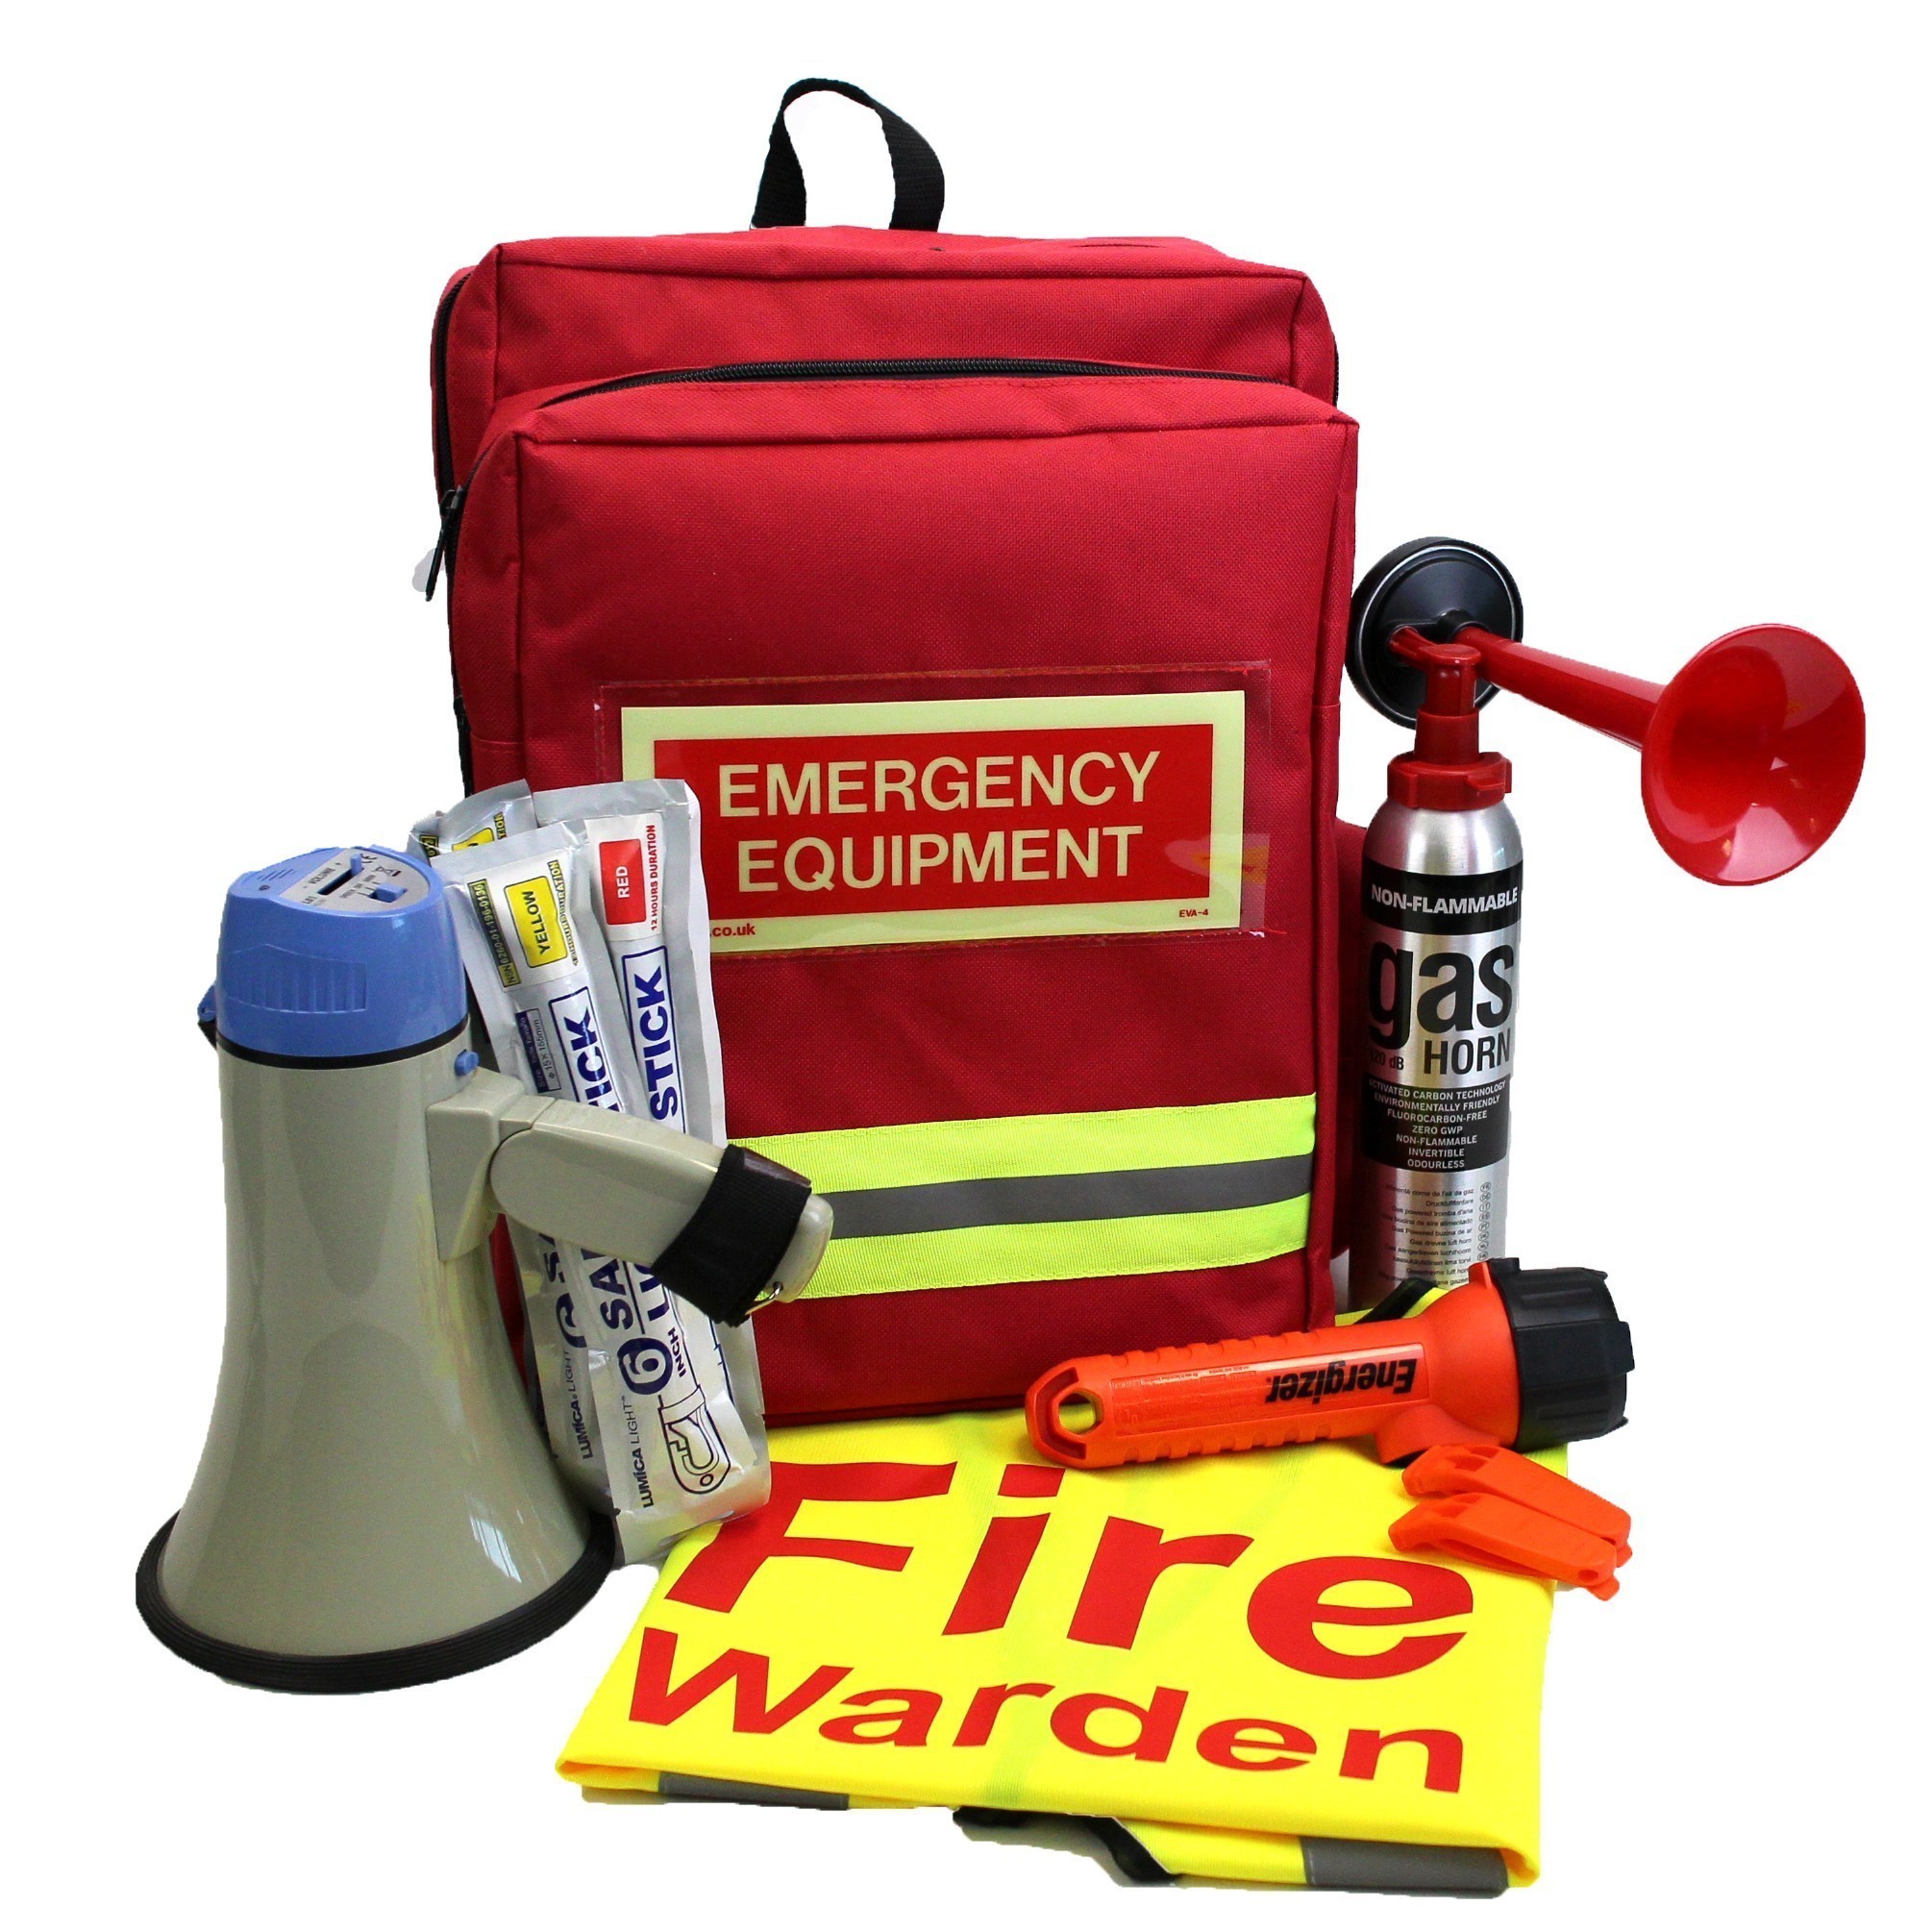 emergency equipment fire warden